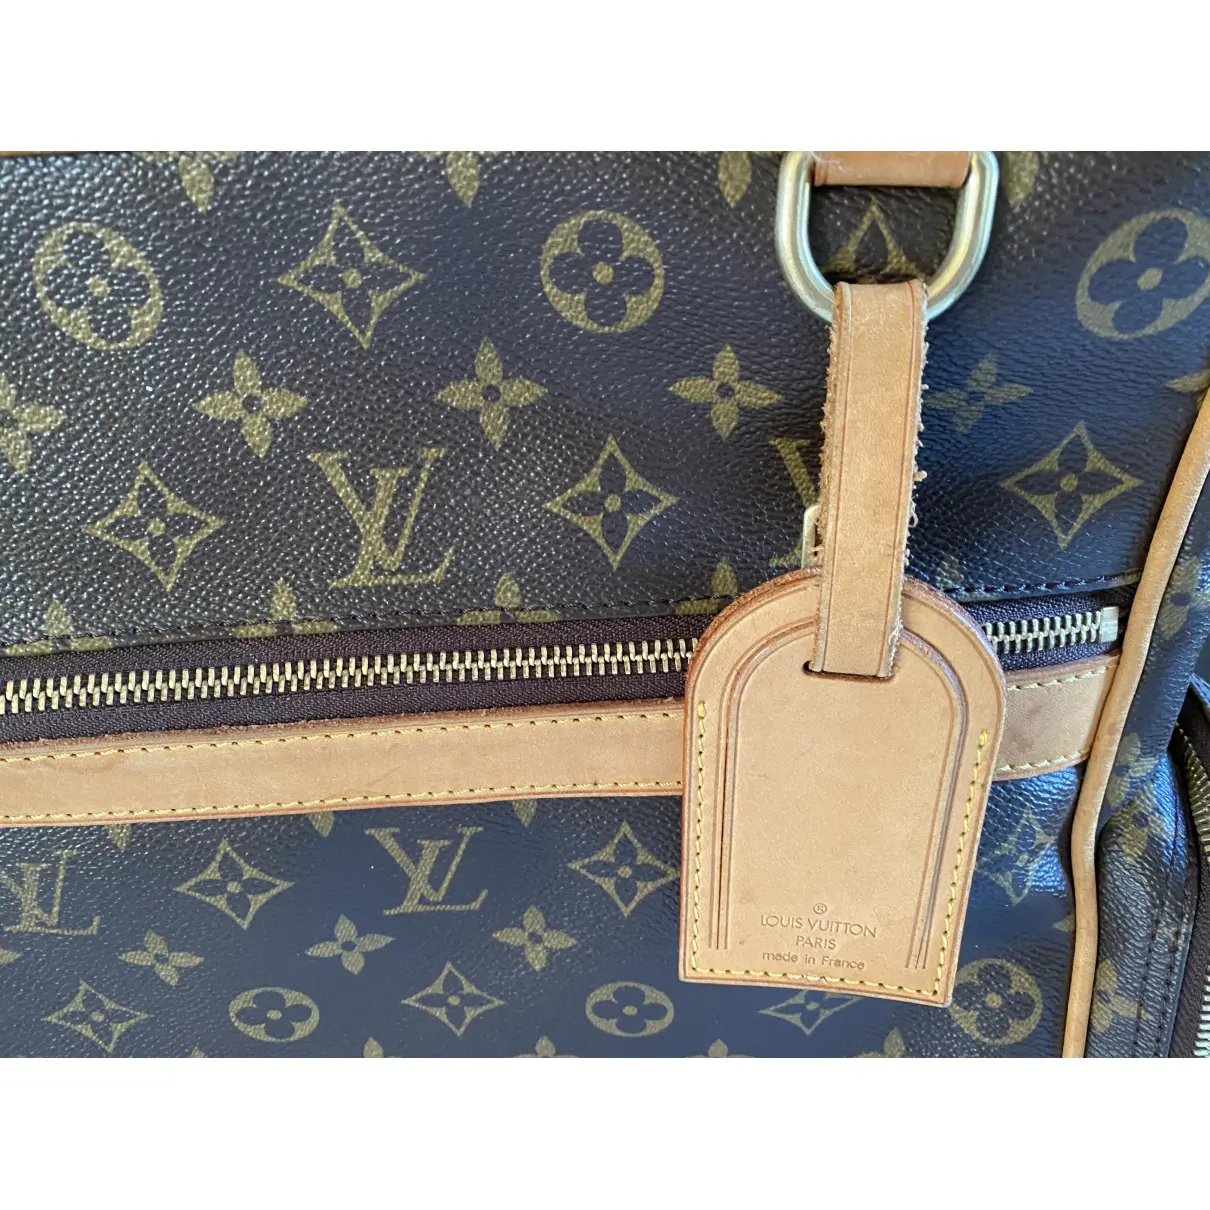 Cloth 24h bag Louis Vuitton